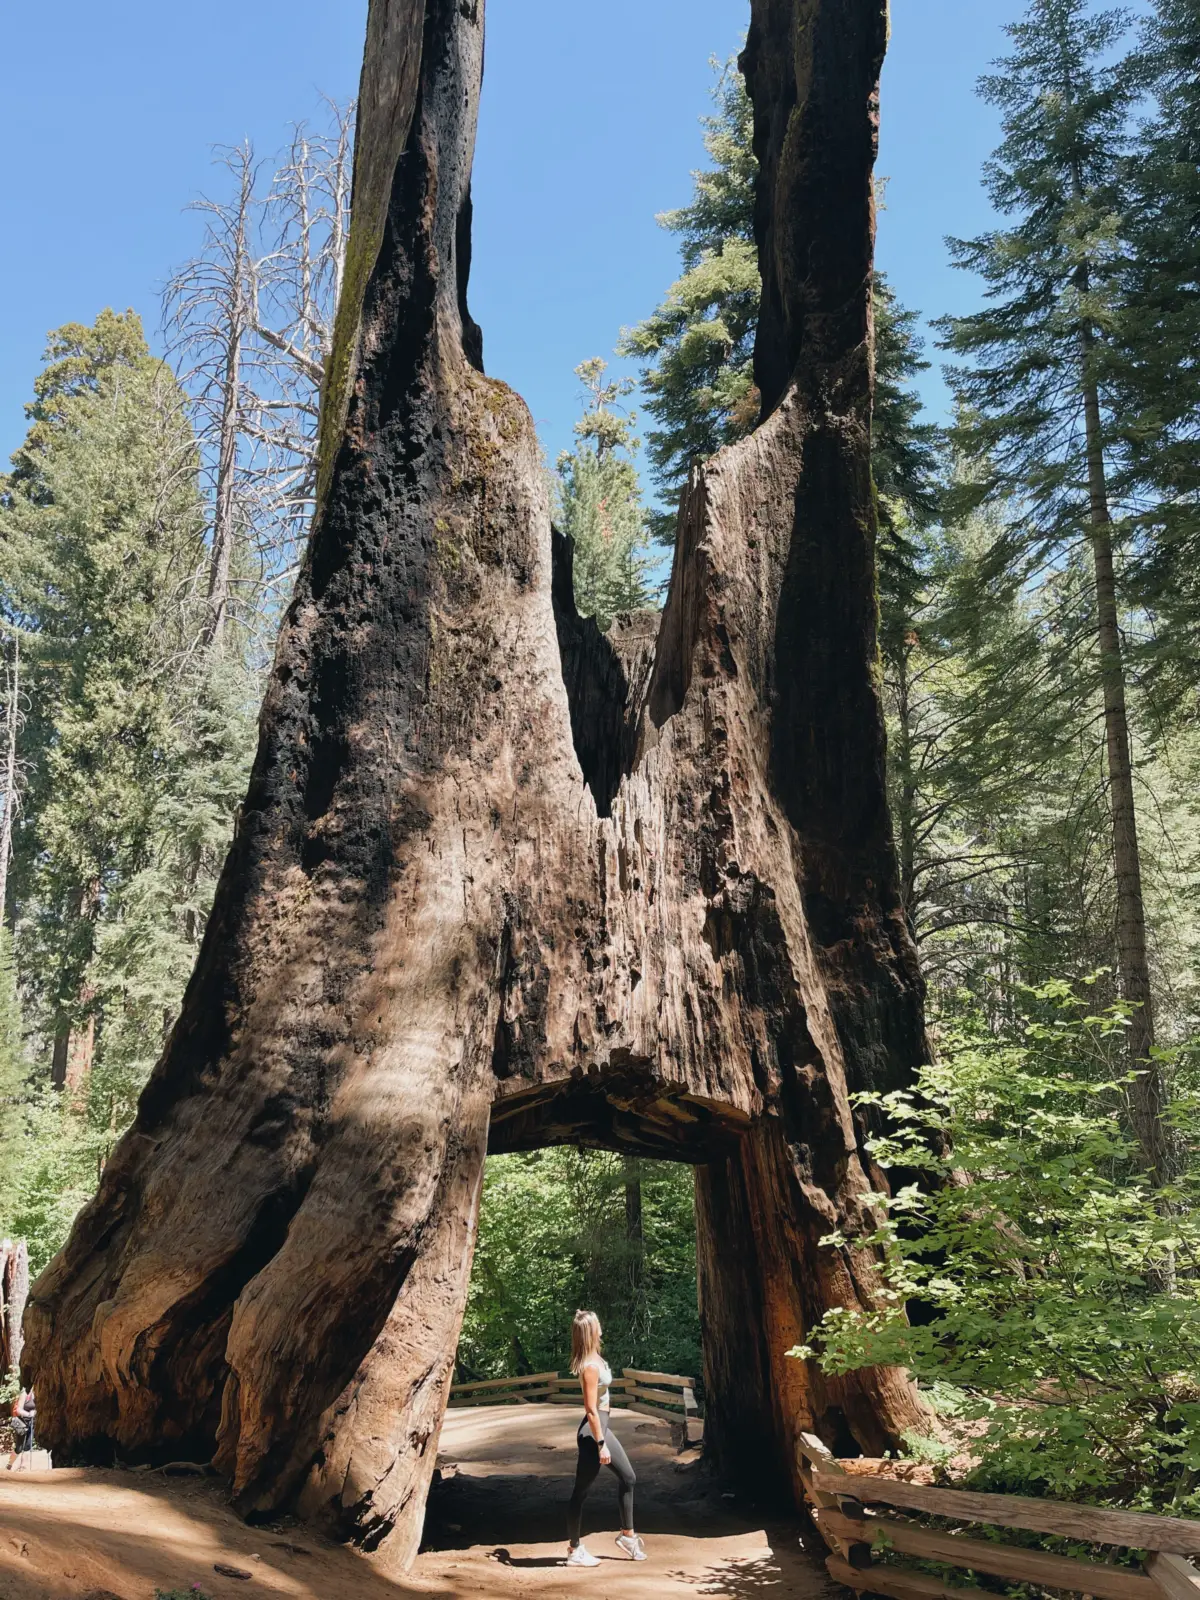 Tuolumne Grove of Giant Sequoias